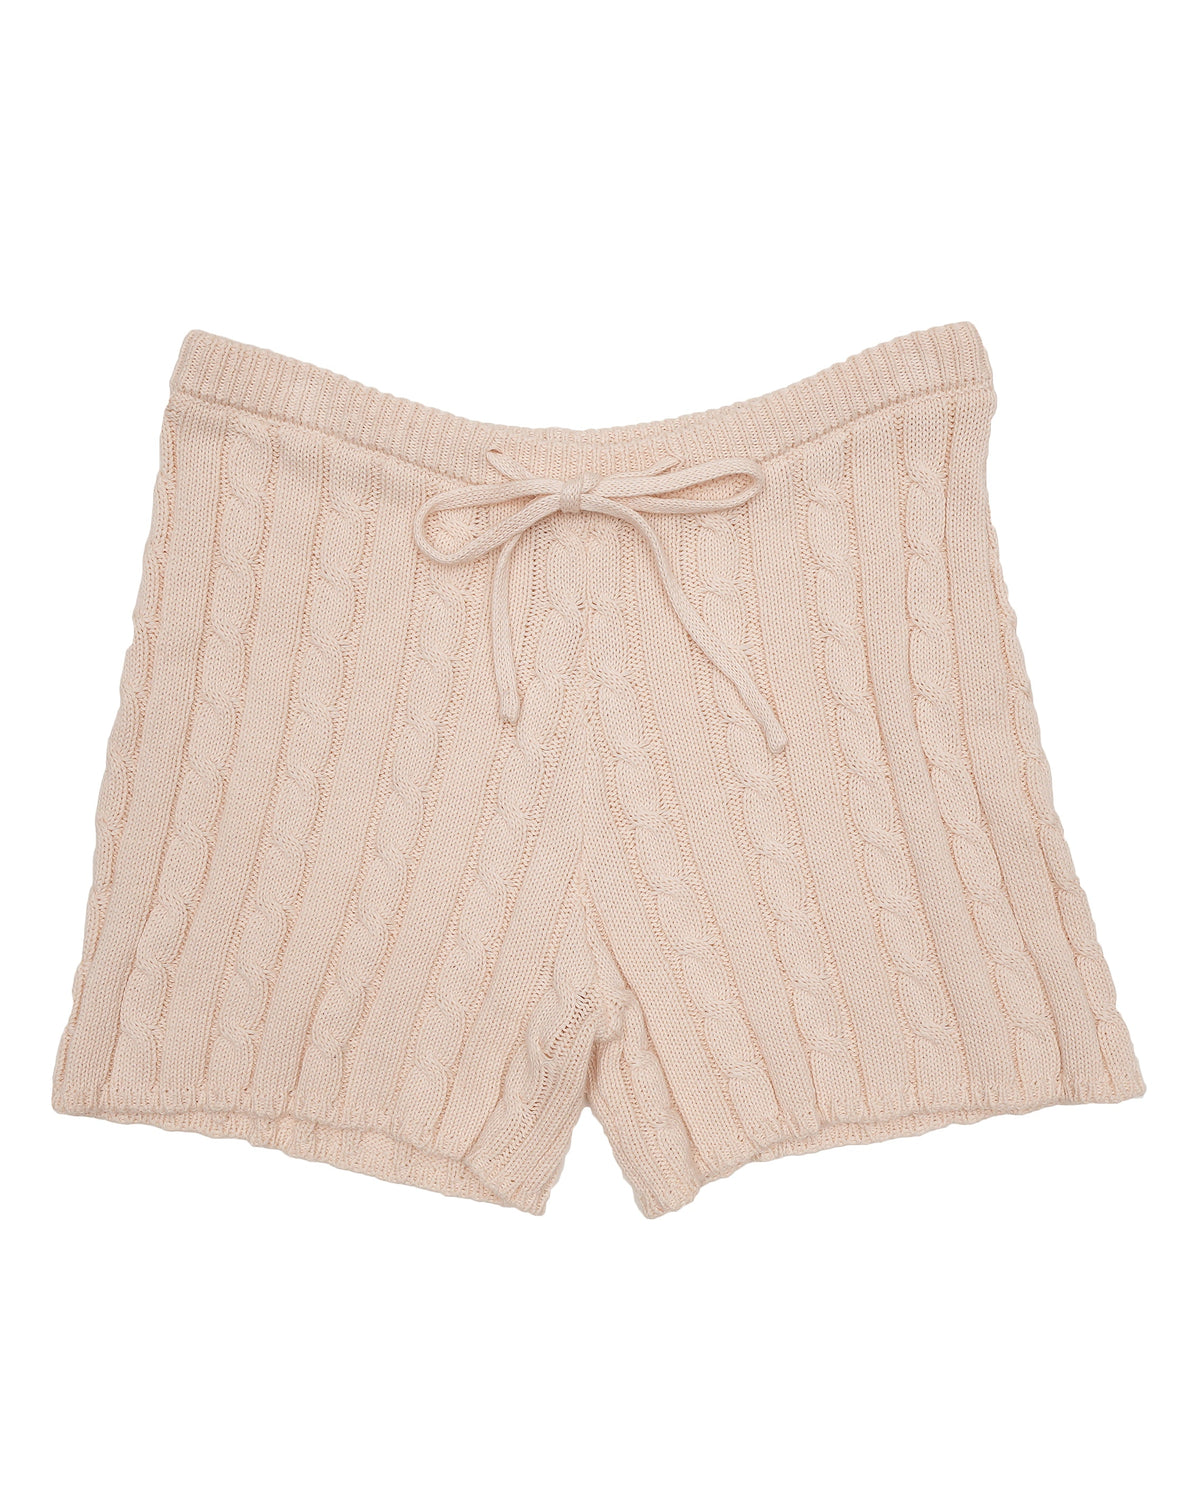 Cable Knit Drawstring Shorts - Peachy Cream